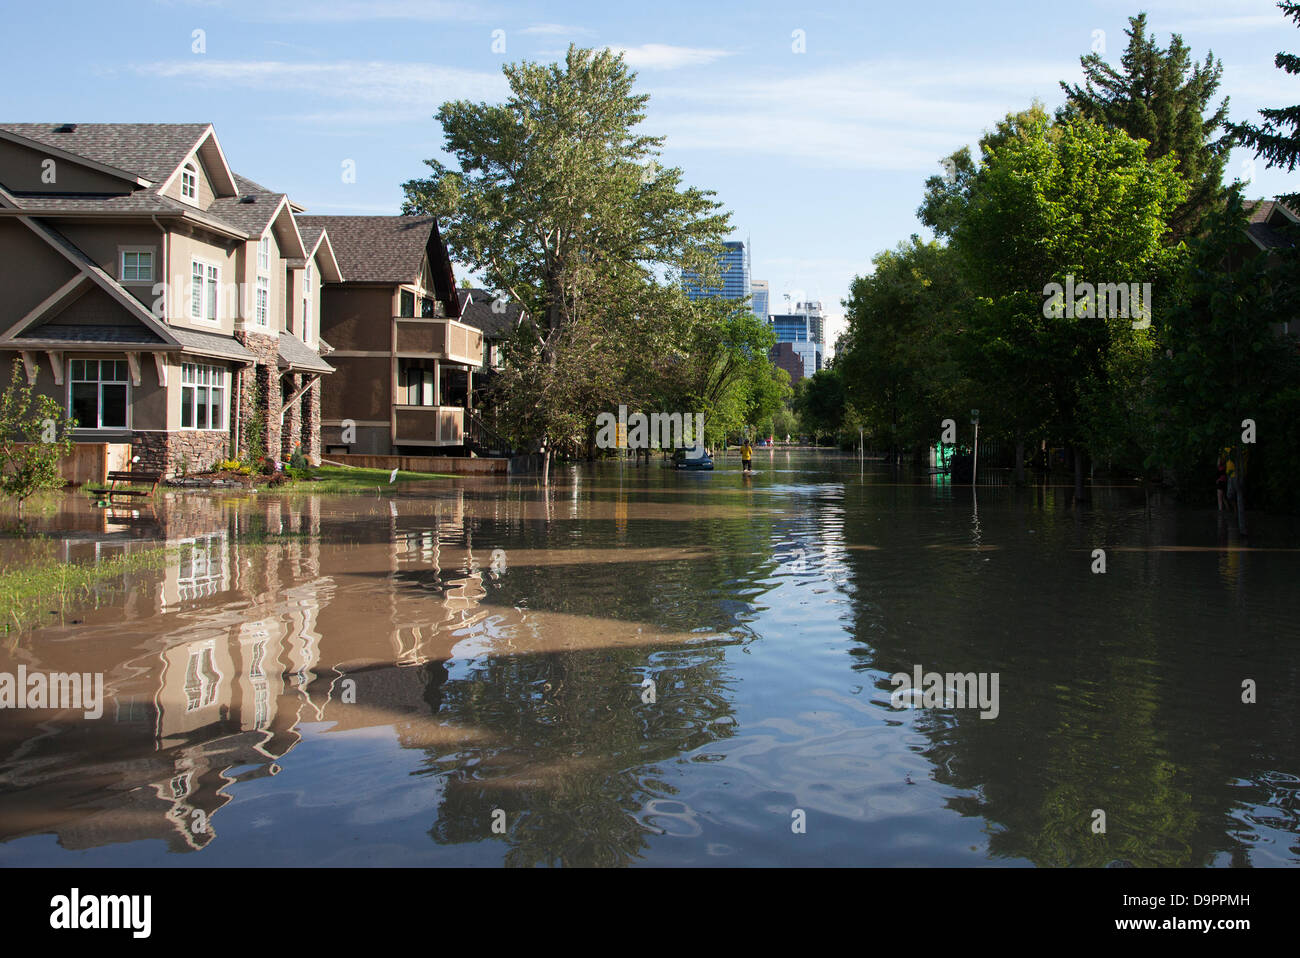 Sabato 22 giugno 2013. Una strada allagata nel quartiere Sunnyside di Calgary, Alberta, Canada. Forti piogge hanno causato inondazioni estreme in città' Foto Stock